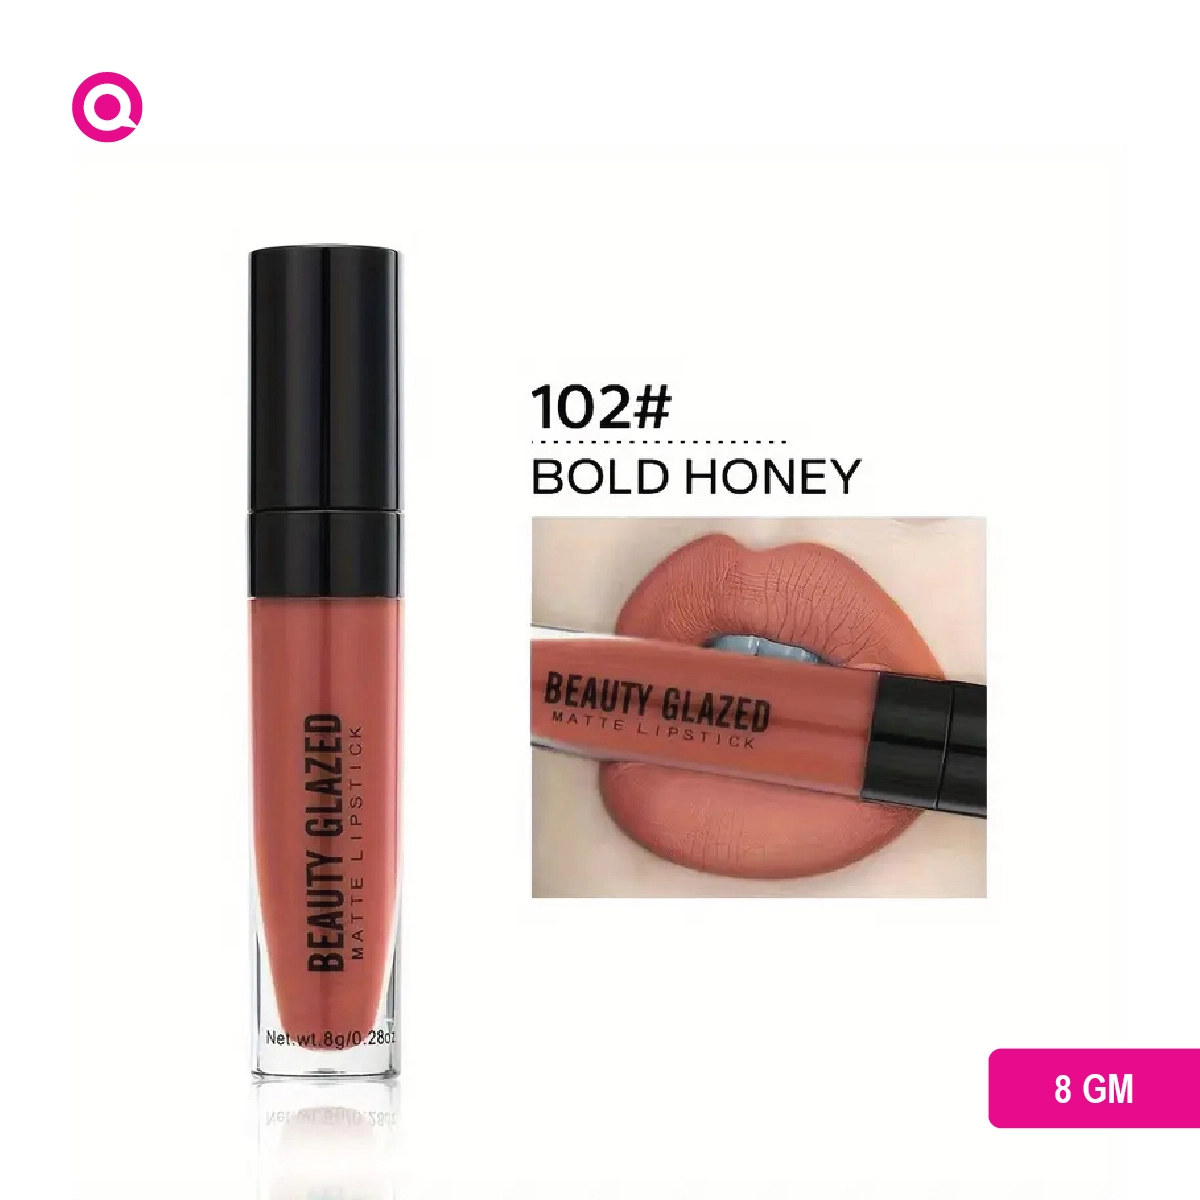 Beauty Glazed Matte Lipstick-BOLD HONEY-102